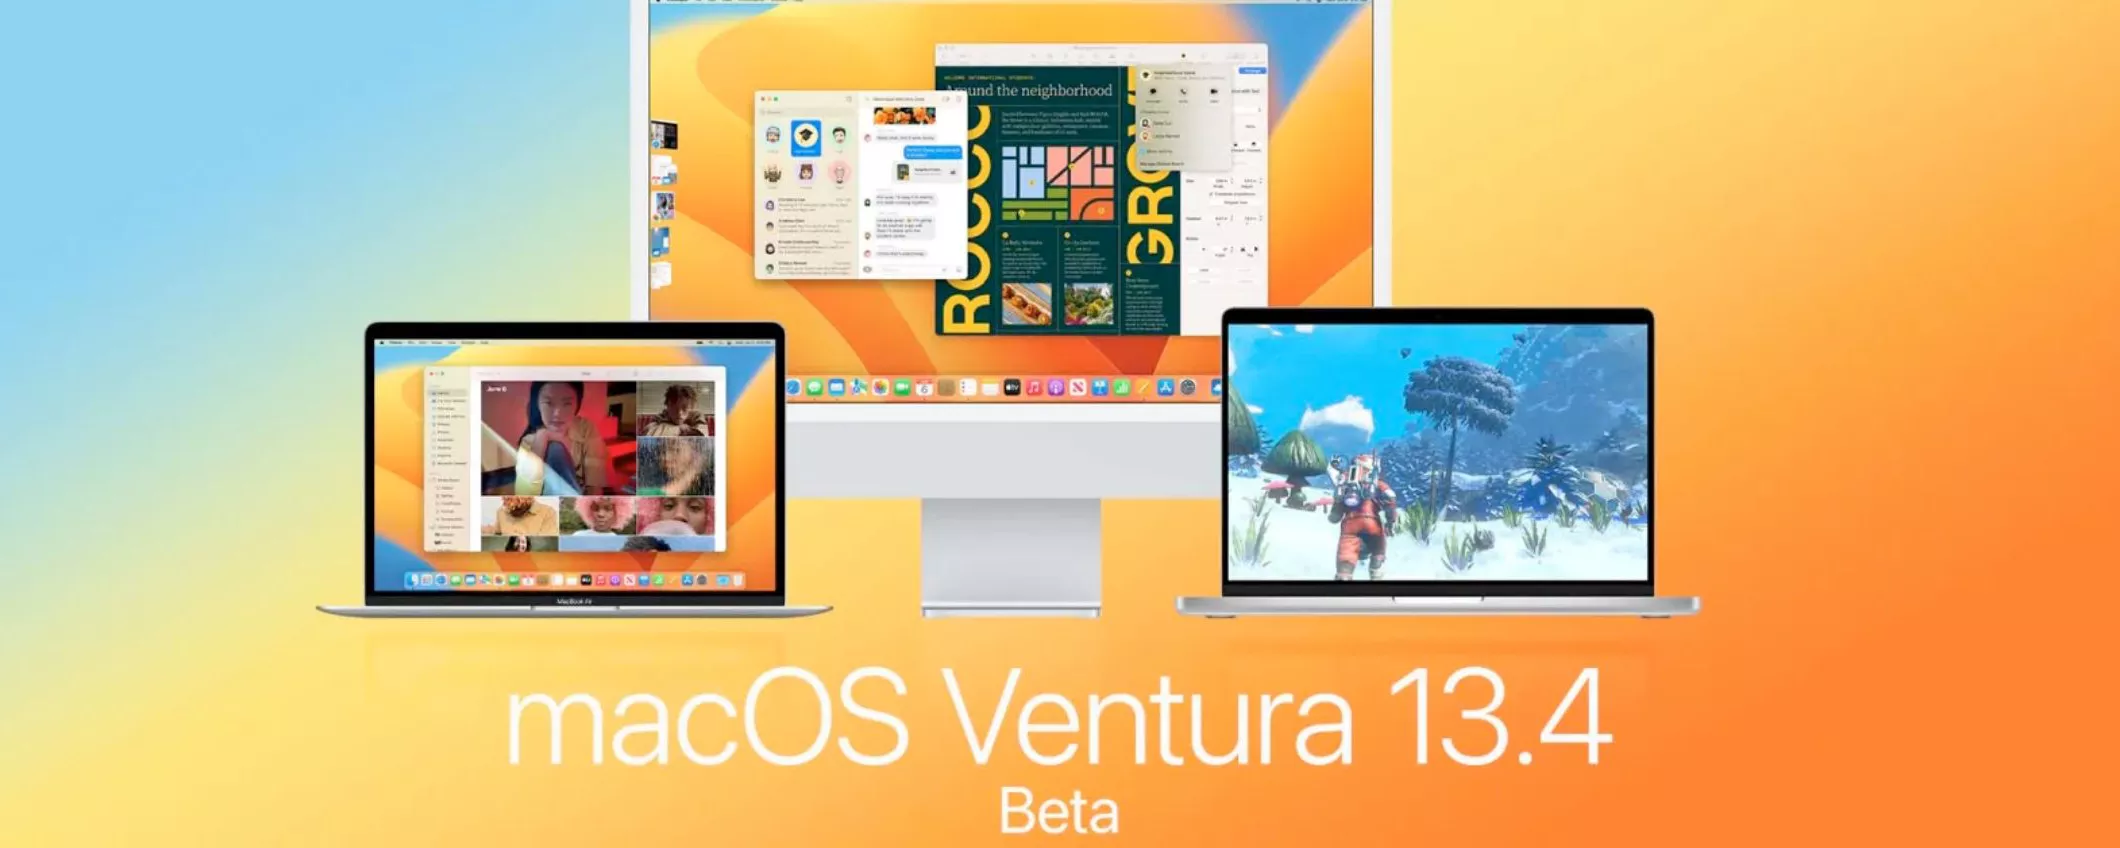 macOS Ventura 13.4 RC 3 disponibile per sviluppatori e beta tester